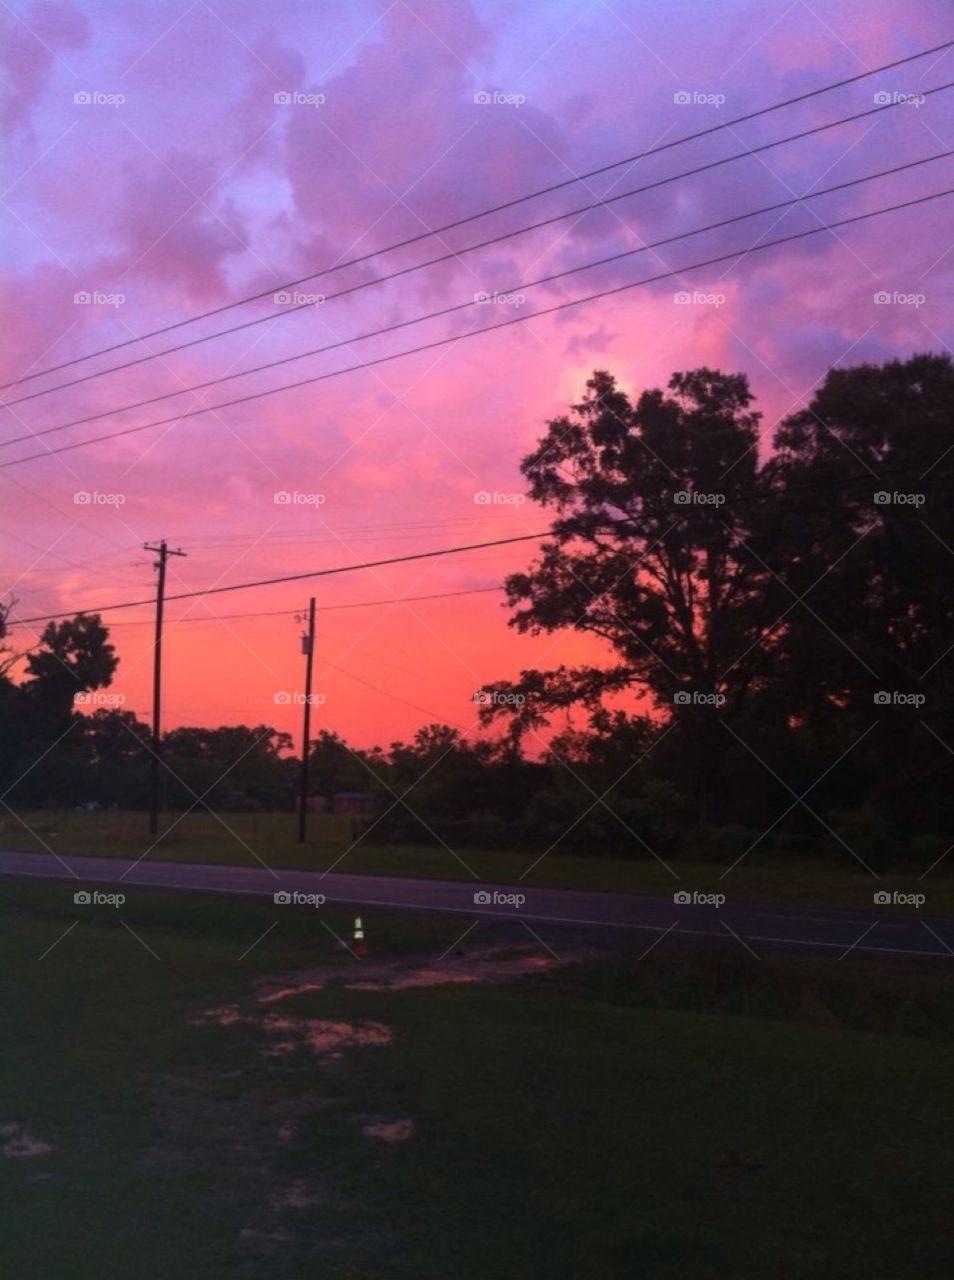 Louisiana sunset